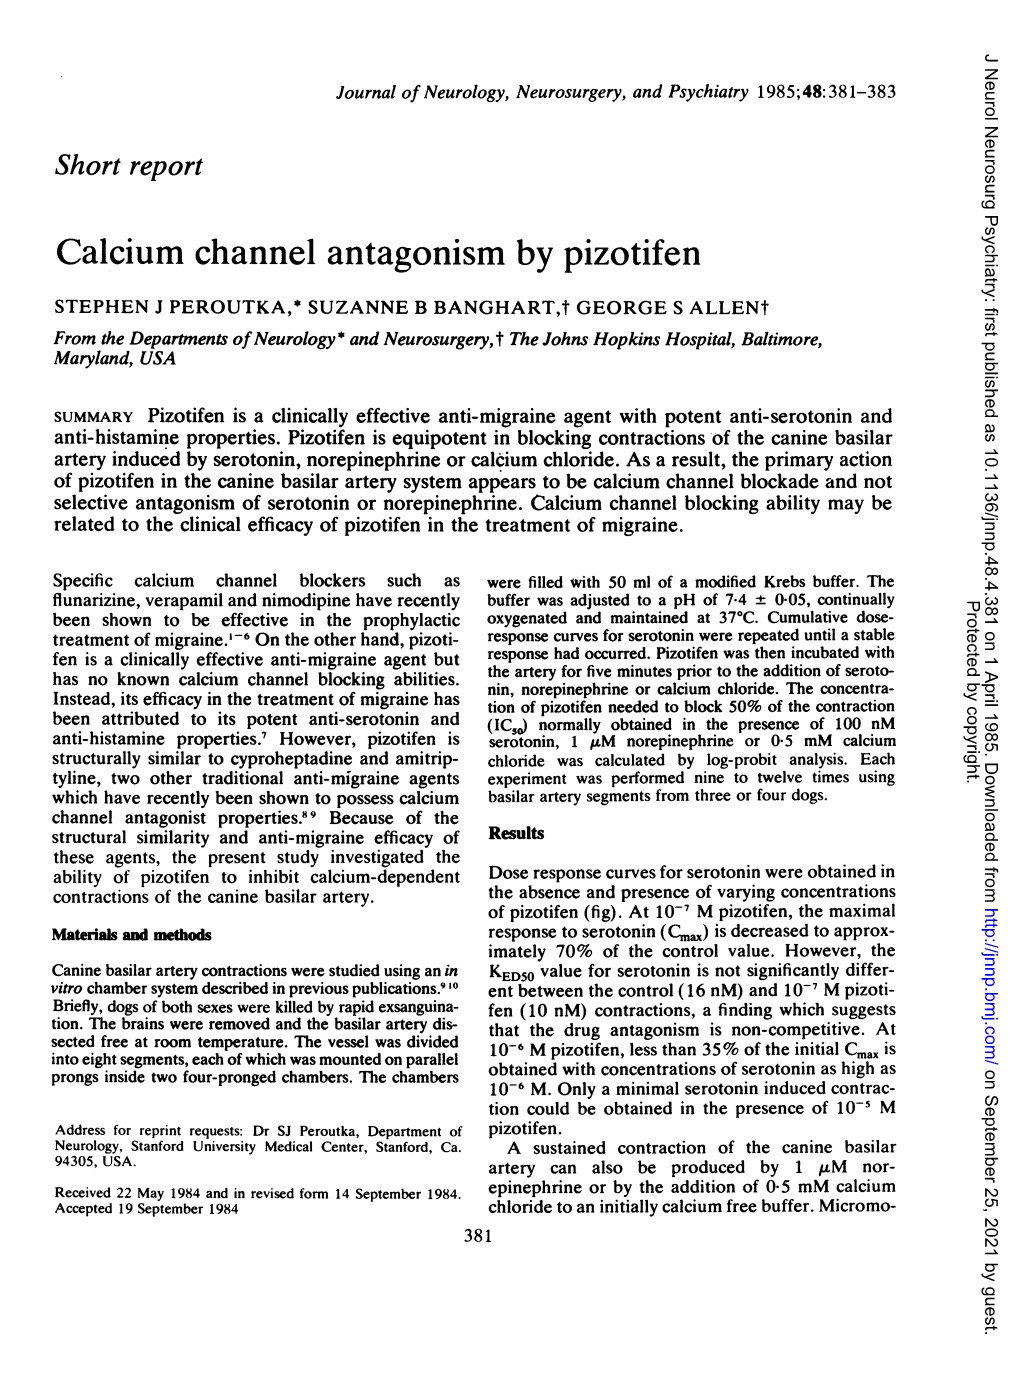 Calcium Channel Antagonism by Pizotifen